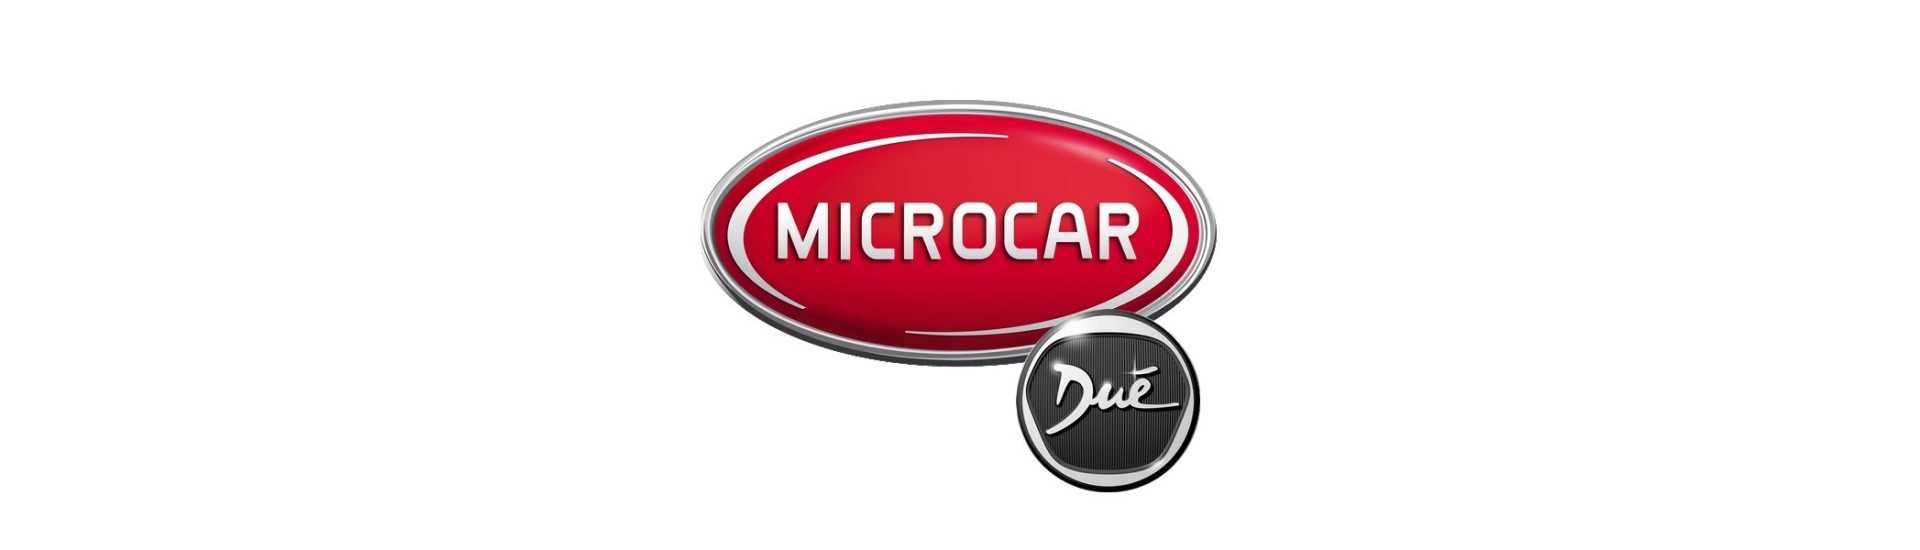 Commodo till bästa pris för bilar utan tillstånd Microcar Dué